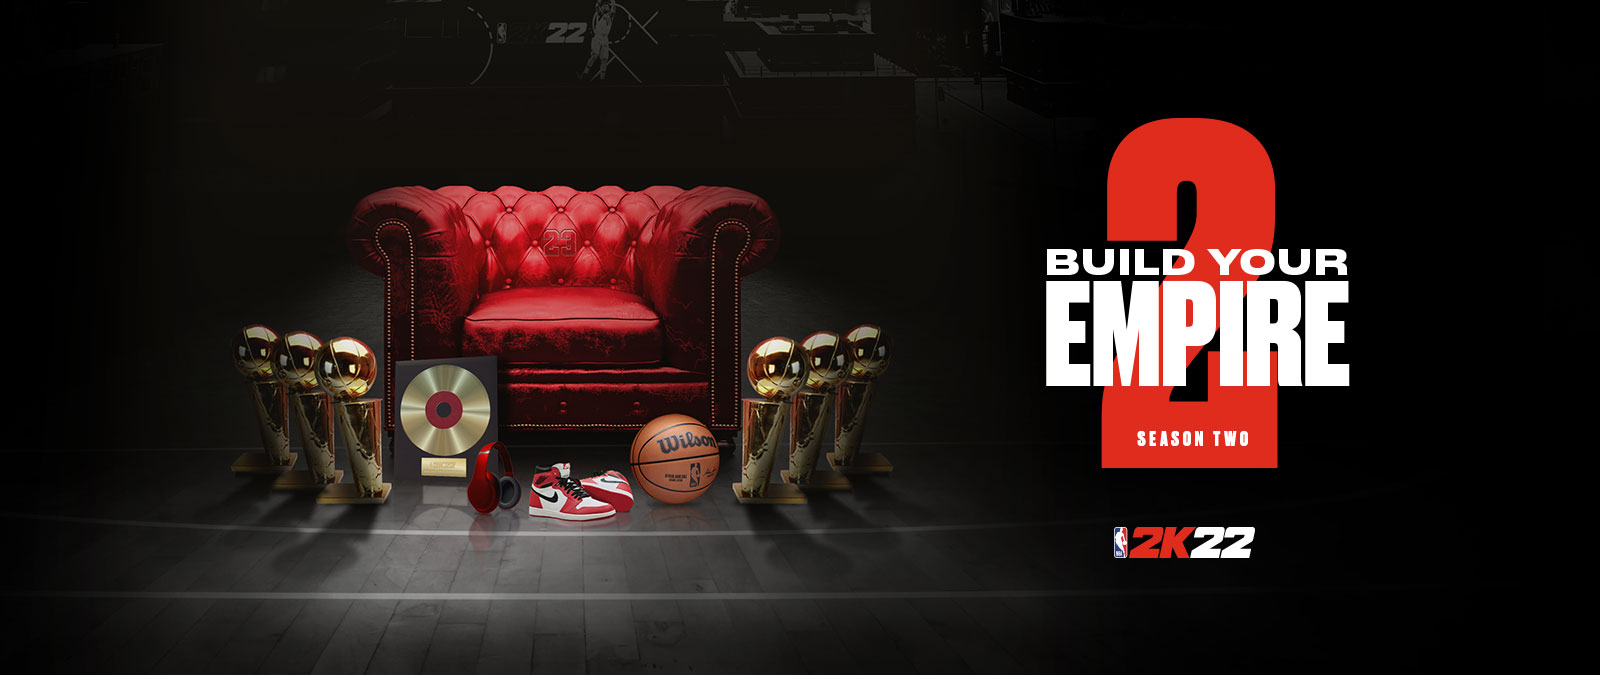 Zbuduj swoje imperium w sezonie 2 NBA 2k22: Kilka trofeów ustawionych wokół czerwonego skórzanego krzesła.